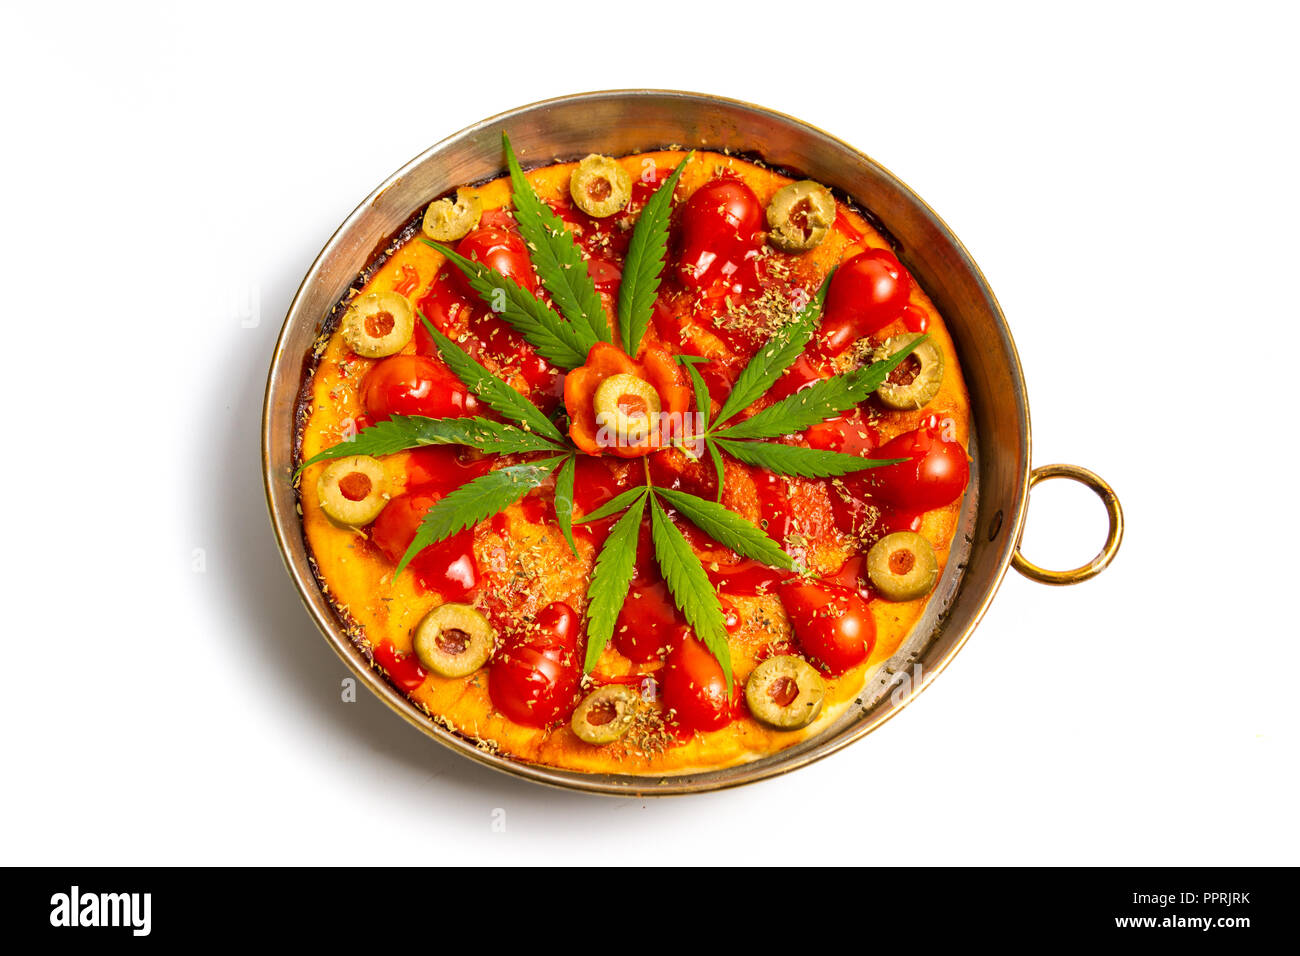 Pizza mit Marihuana auf einem Tablett Top View Stockfoto